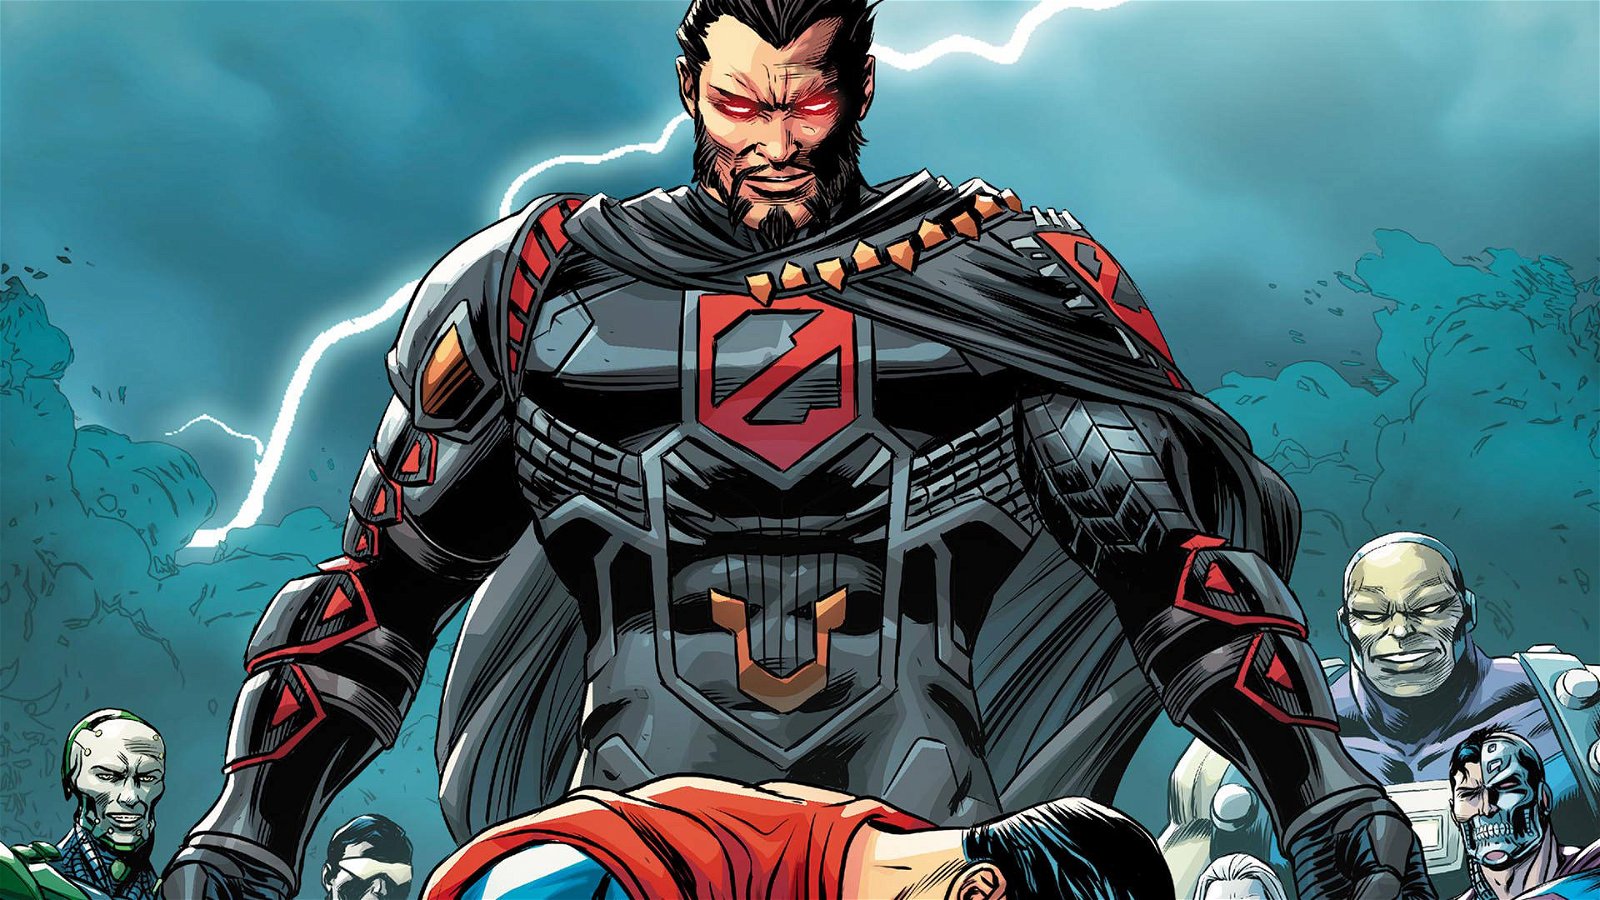 Immagine di Generale Zod: DC Comics e Prime 1 Studio annunciano un'esclusiva action figure